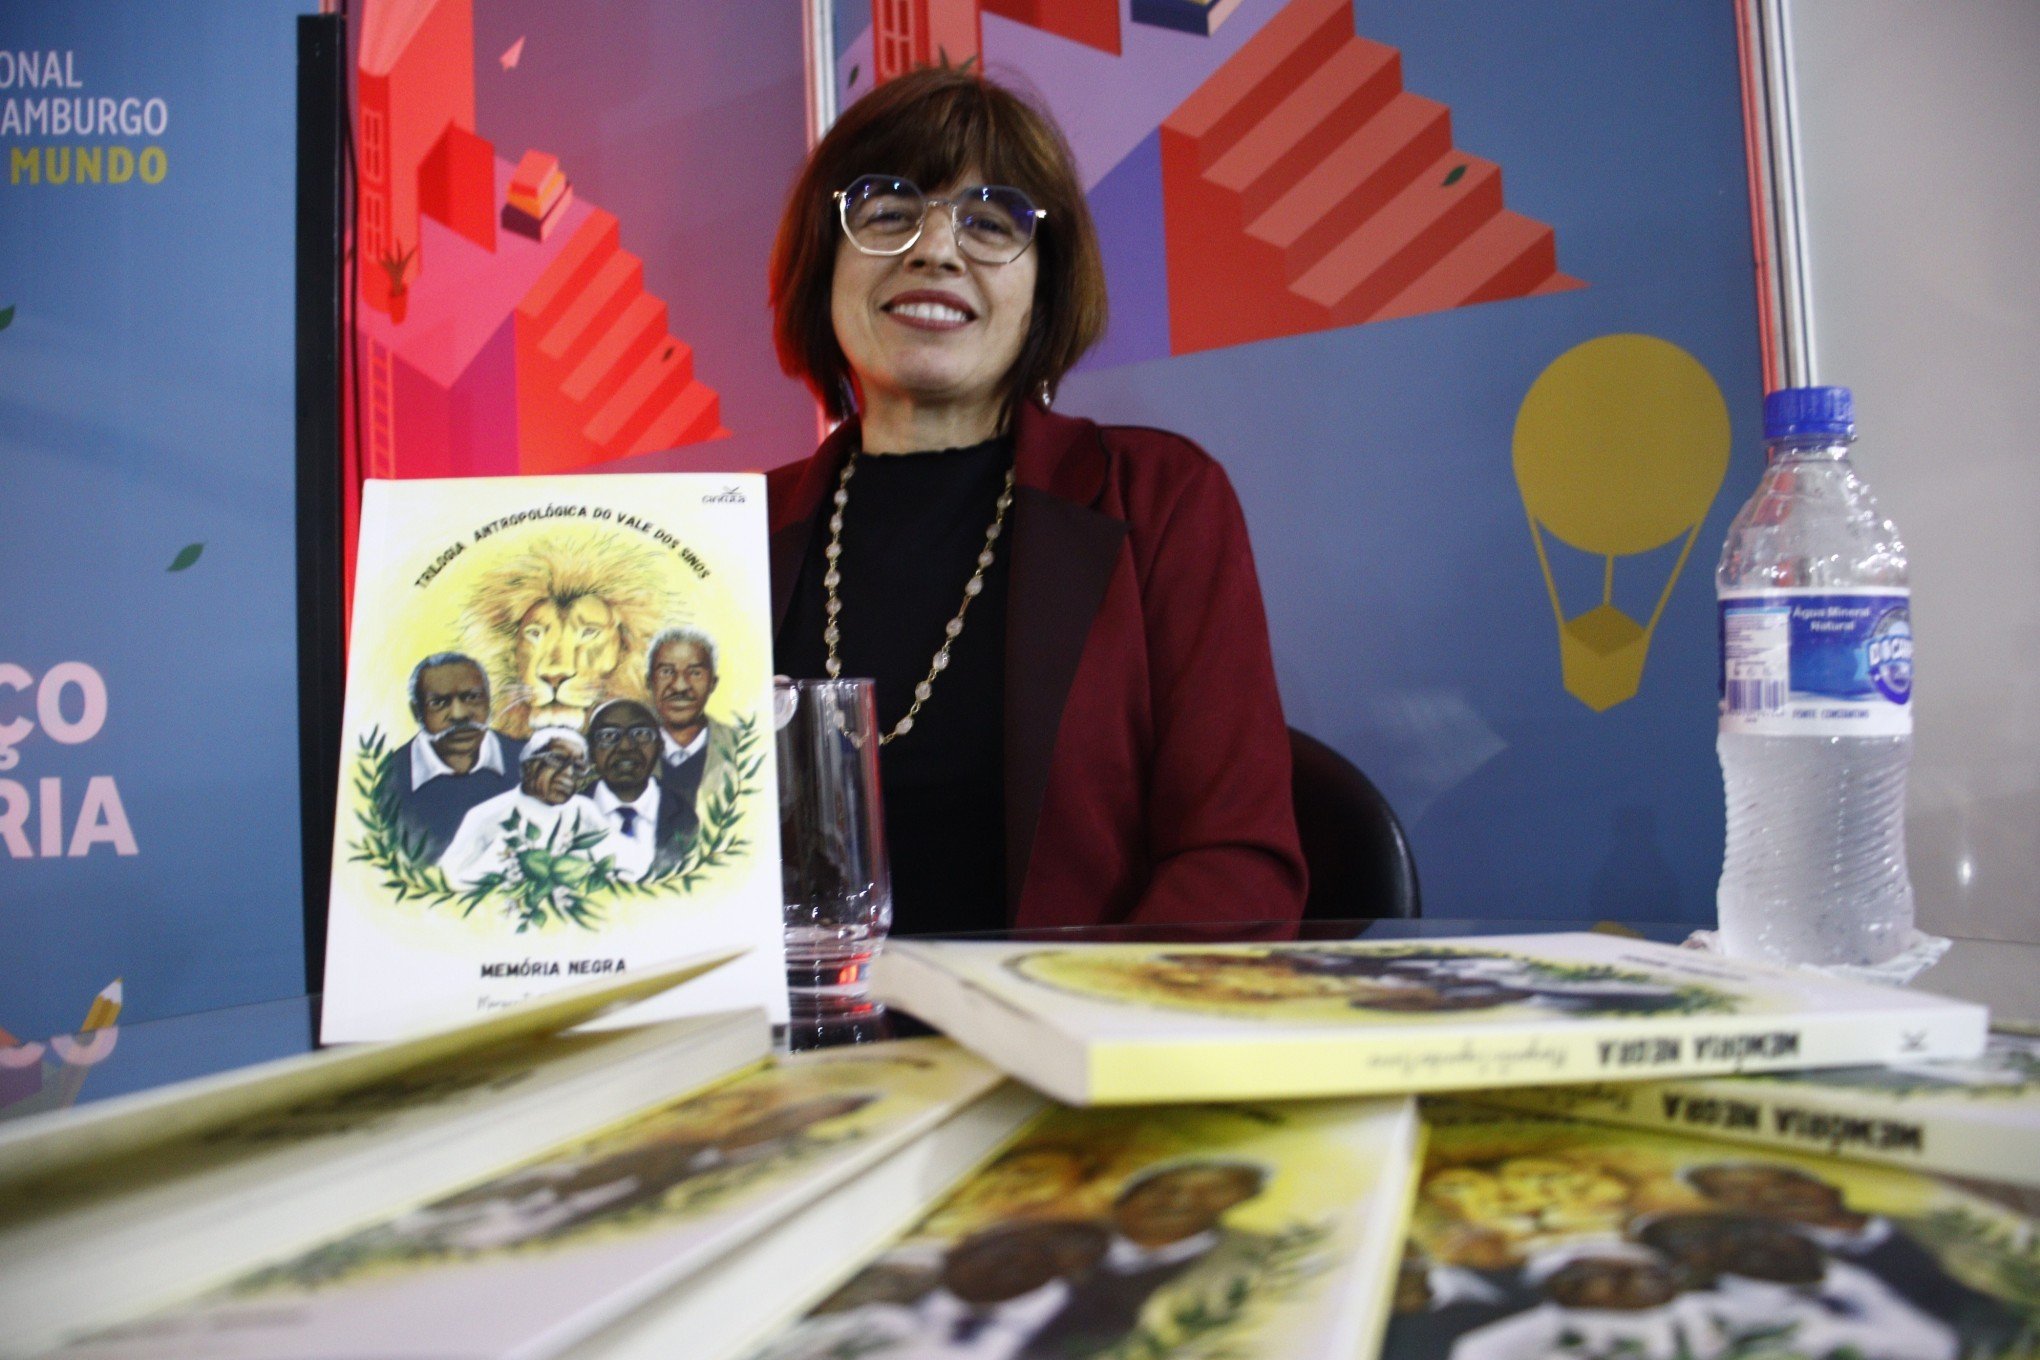 NOVO HAMBURGO: Patrona da feira do livro busca retomar a história negra na região